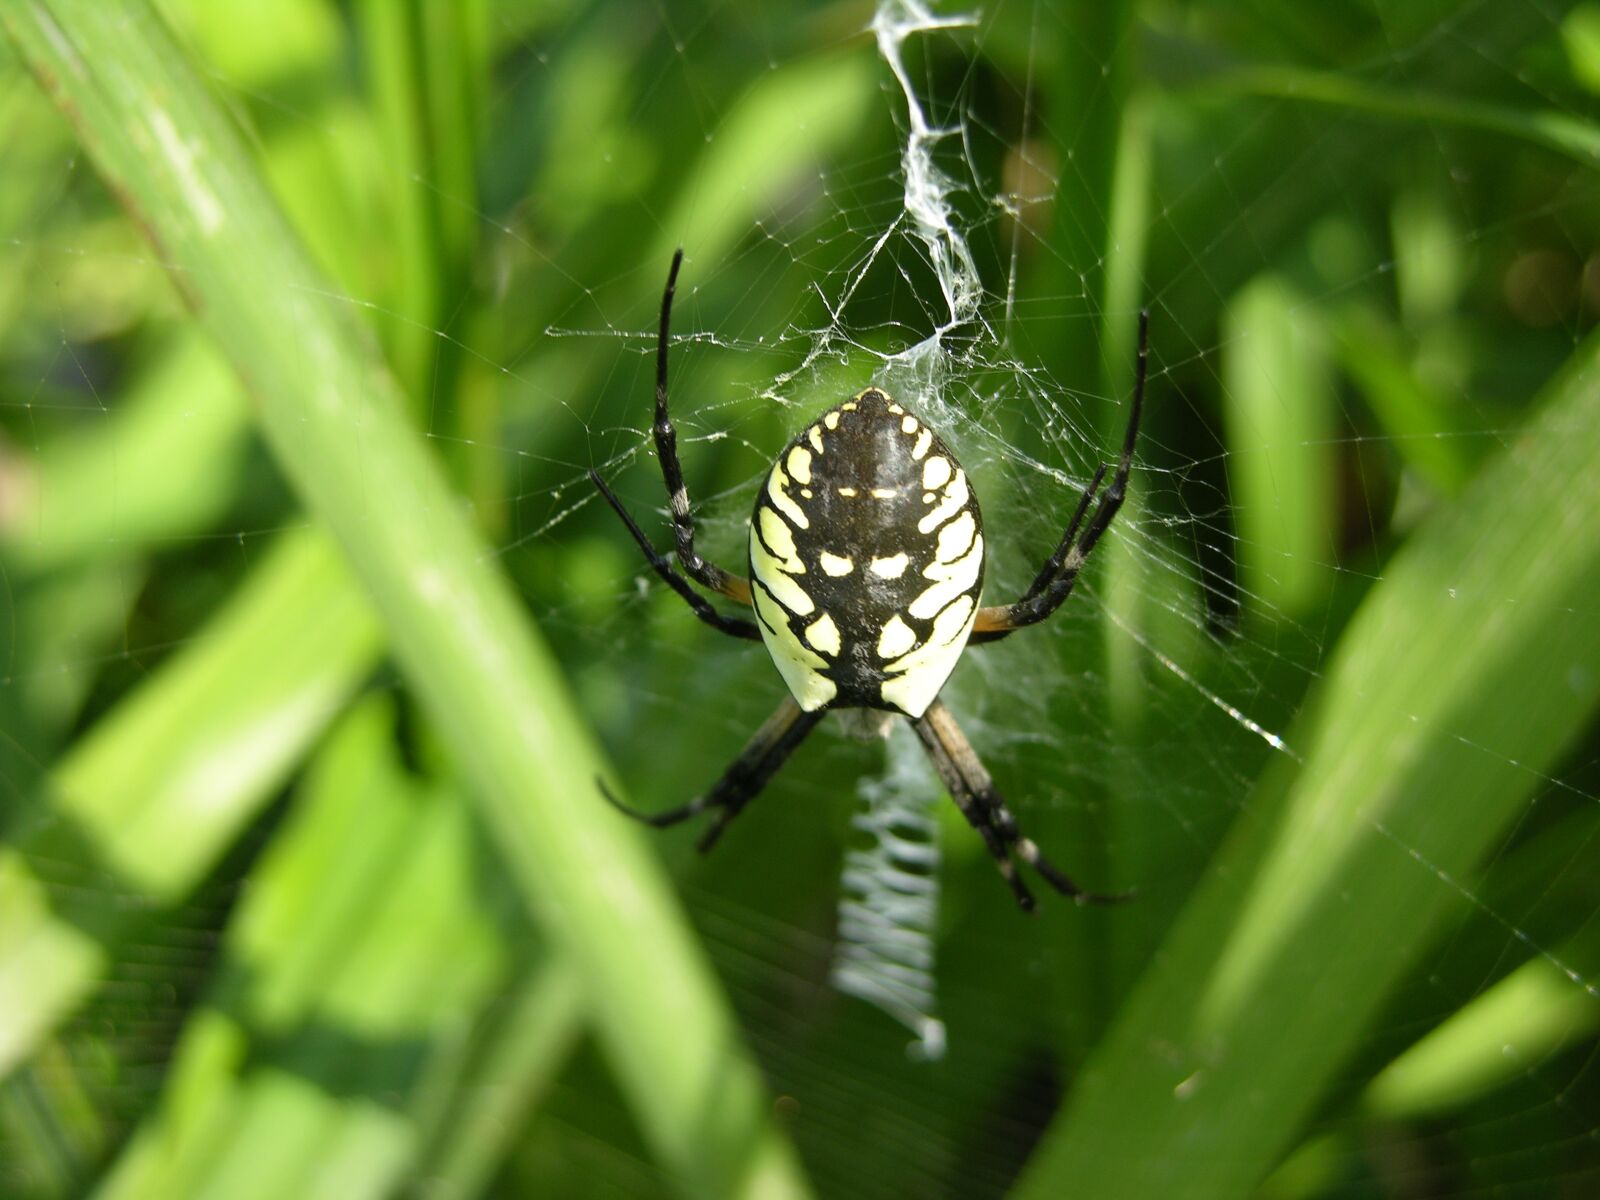 Nikon E8700 sample photo. Garden spider, spider, web photography